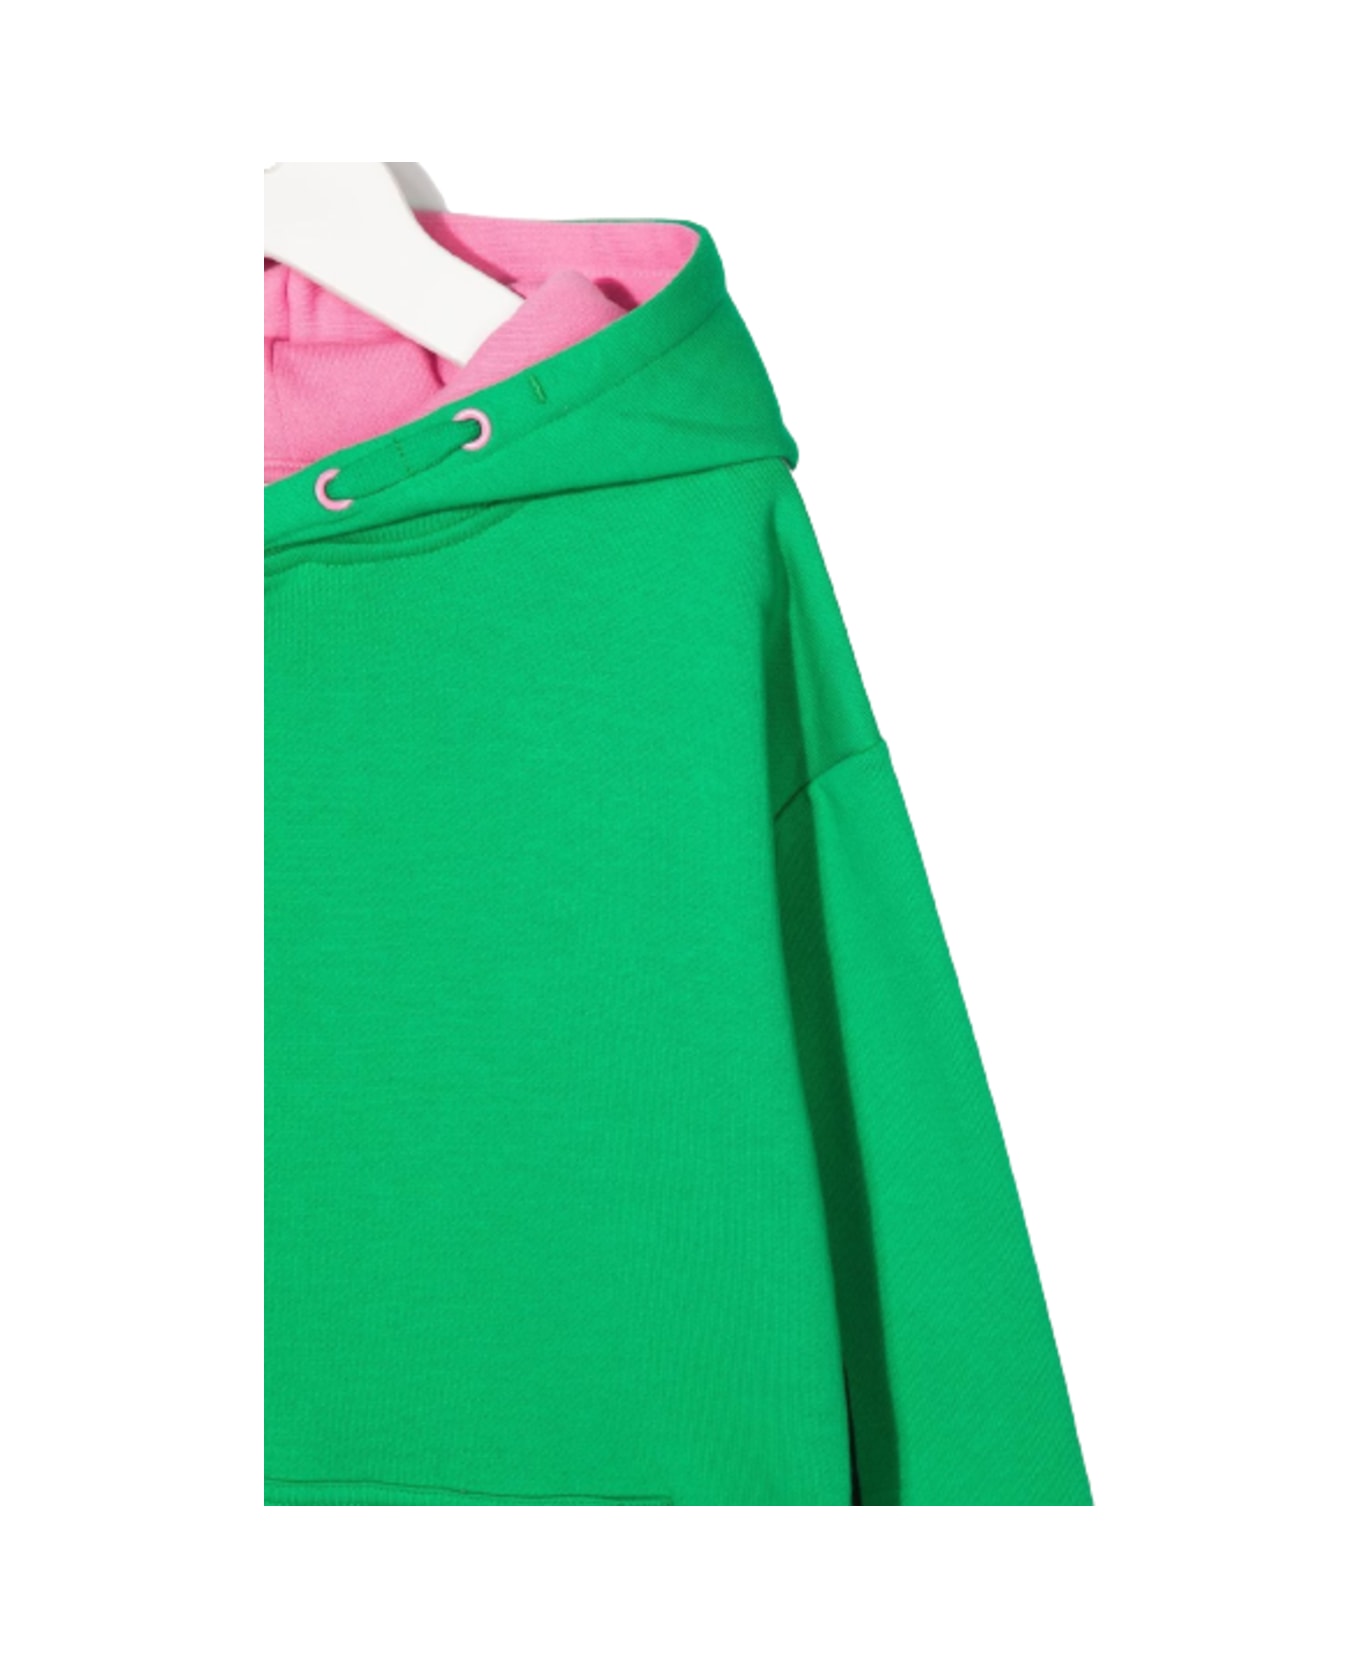 Stella Casaco McCartney Kids Printed Logo Green/pink Jersey Dress Girl Stella Casaco Mccartney Kids - Green